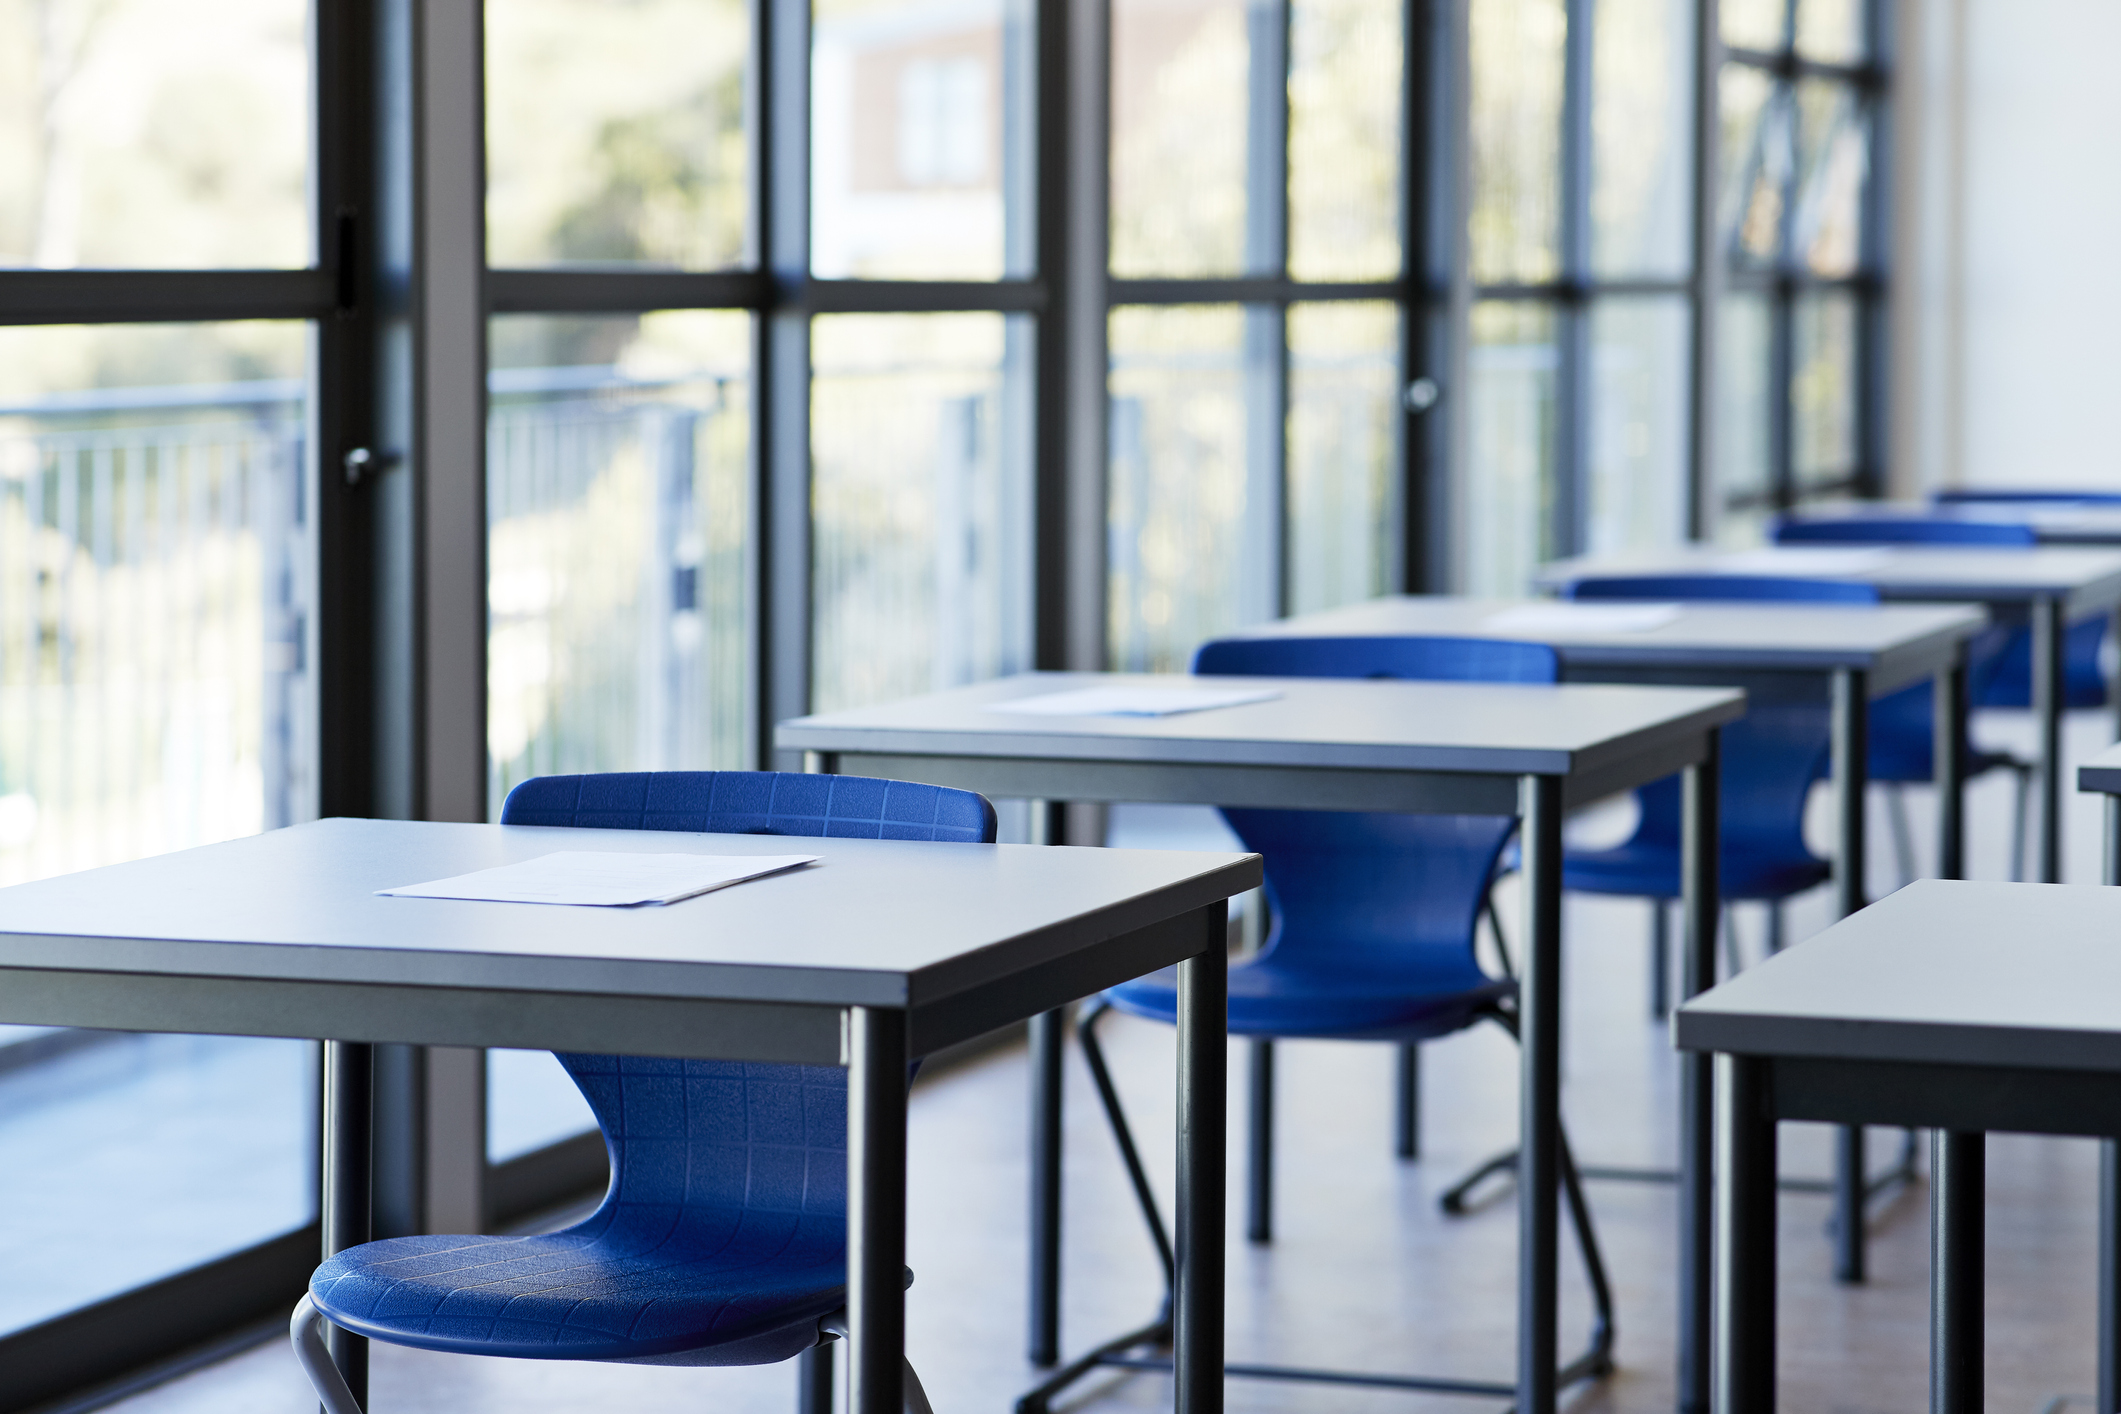 A photo of blue classroom desks seen at a diagonal.